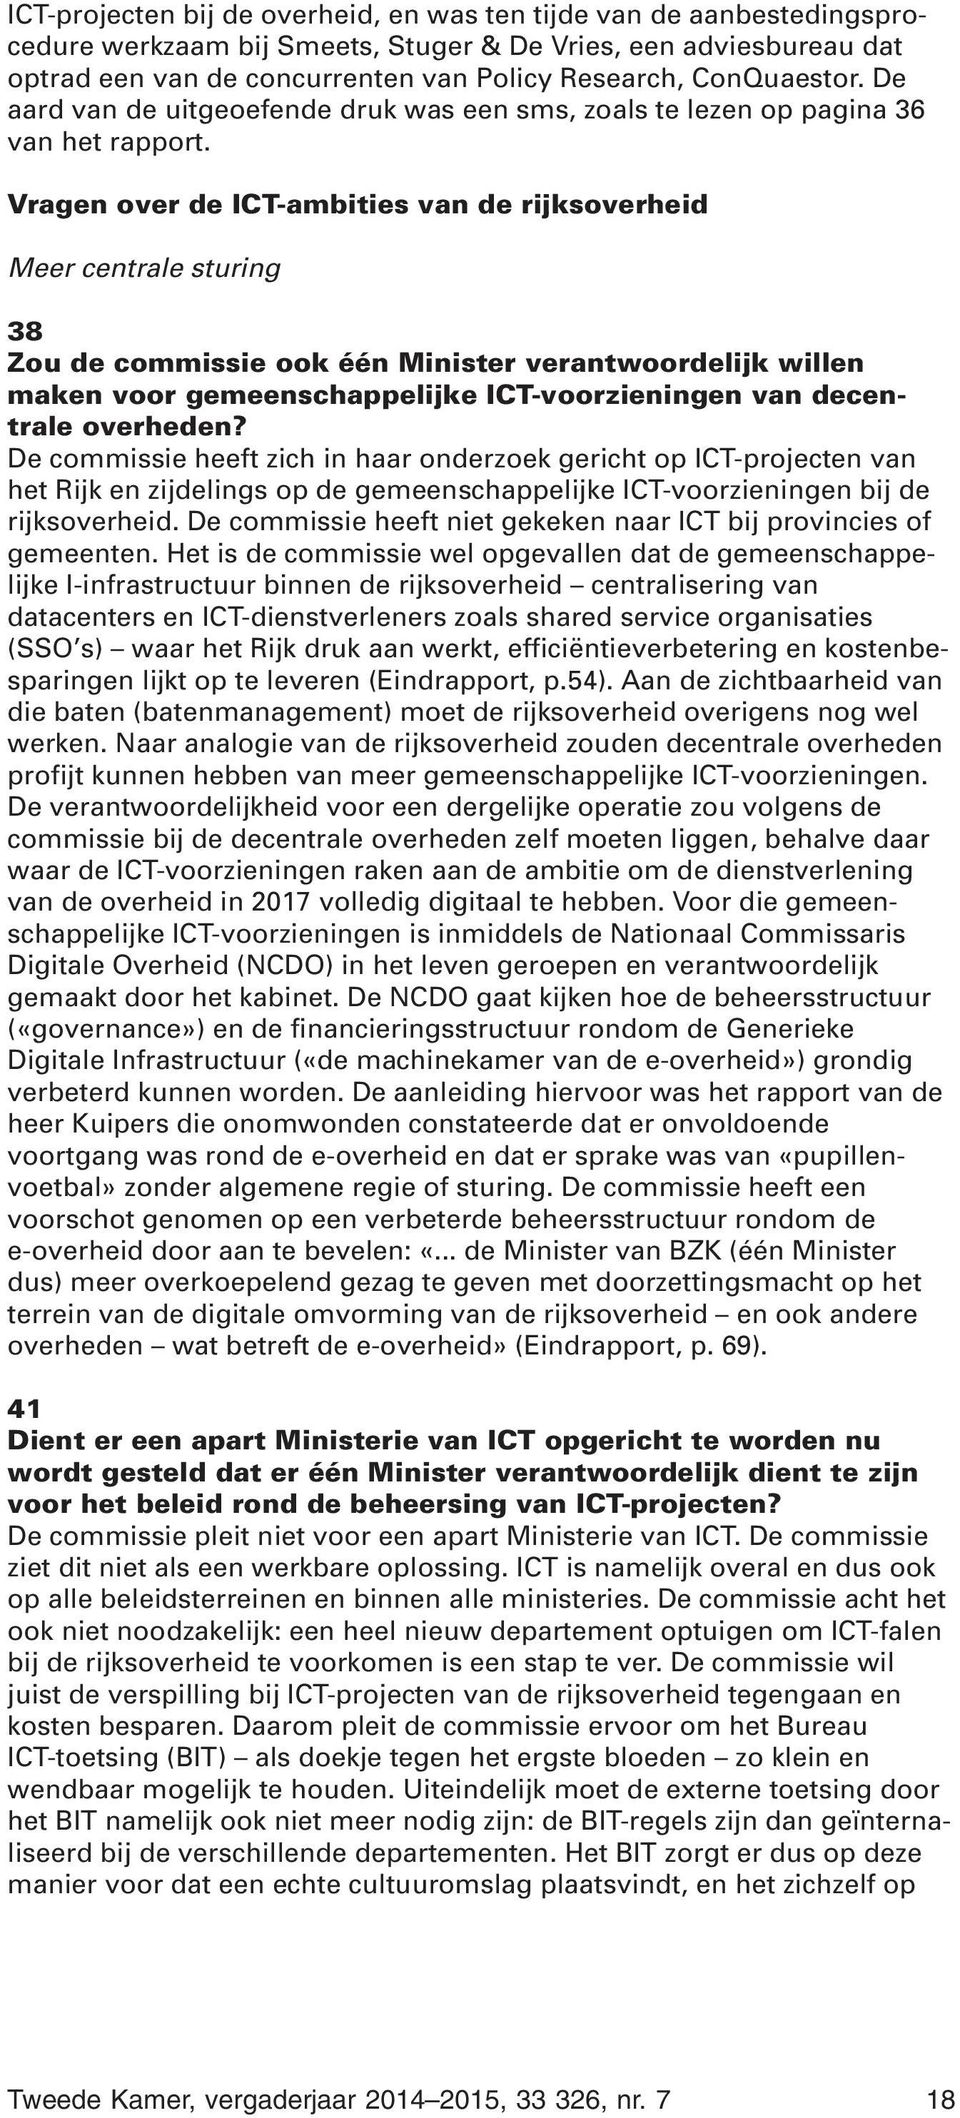 Vragen over de ICT-ambities van de rijksoverheid Meer centrale sturing 38 Zou de commissie ook één Minister verantwoordelijk willen maken voor gemeenschappelijke ICT-voorzieningen van decentrale